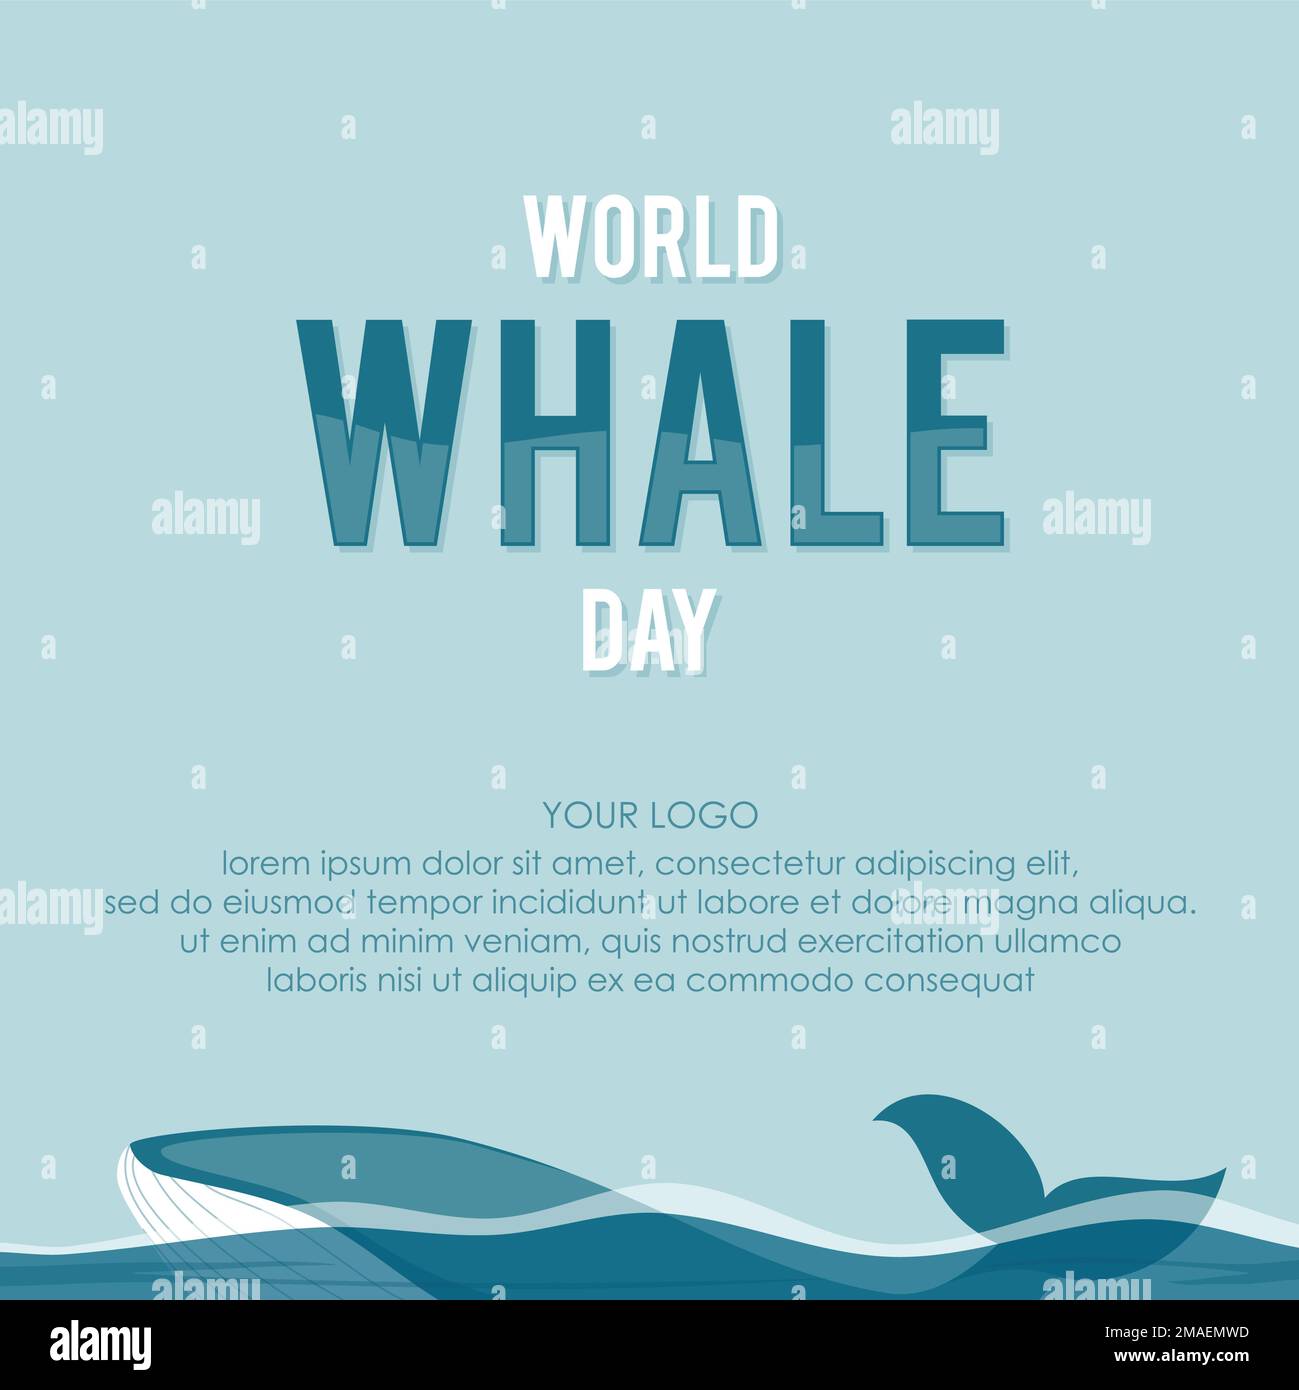 Vorlagenhintergrund für den Weltwal-Tag für Elementdesign. Vektordarstellung Stock Vektor